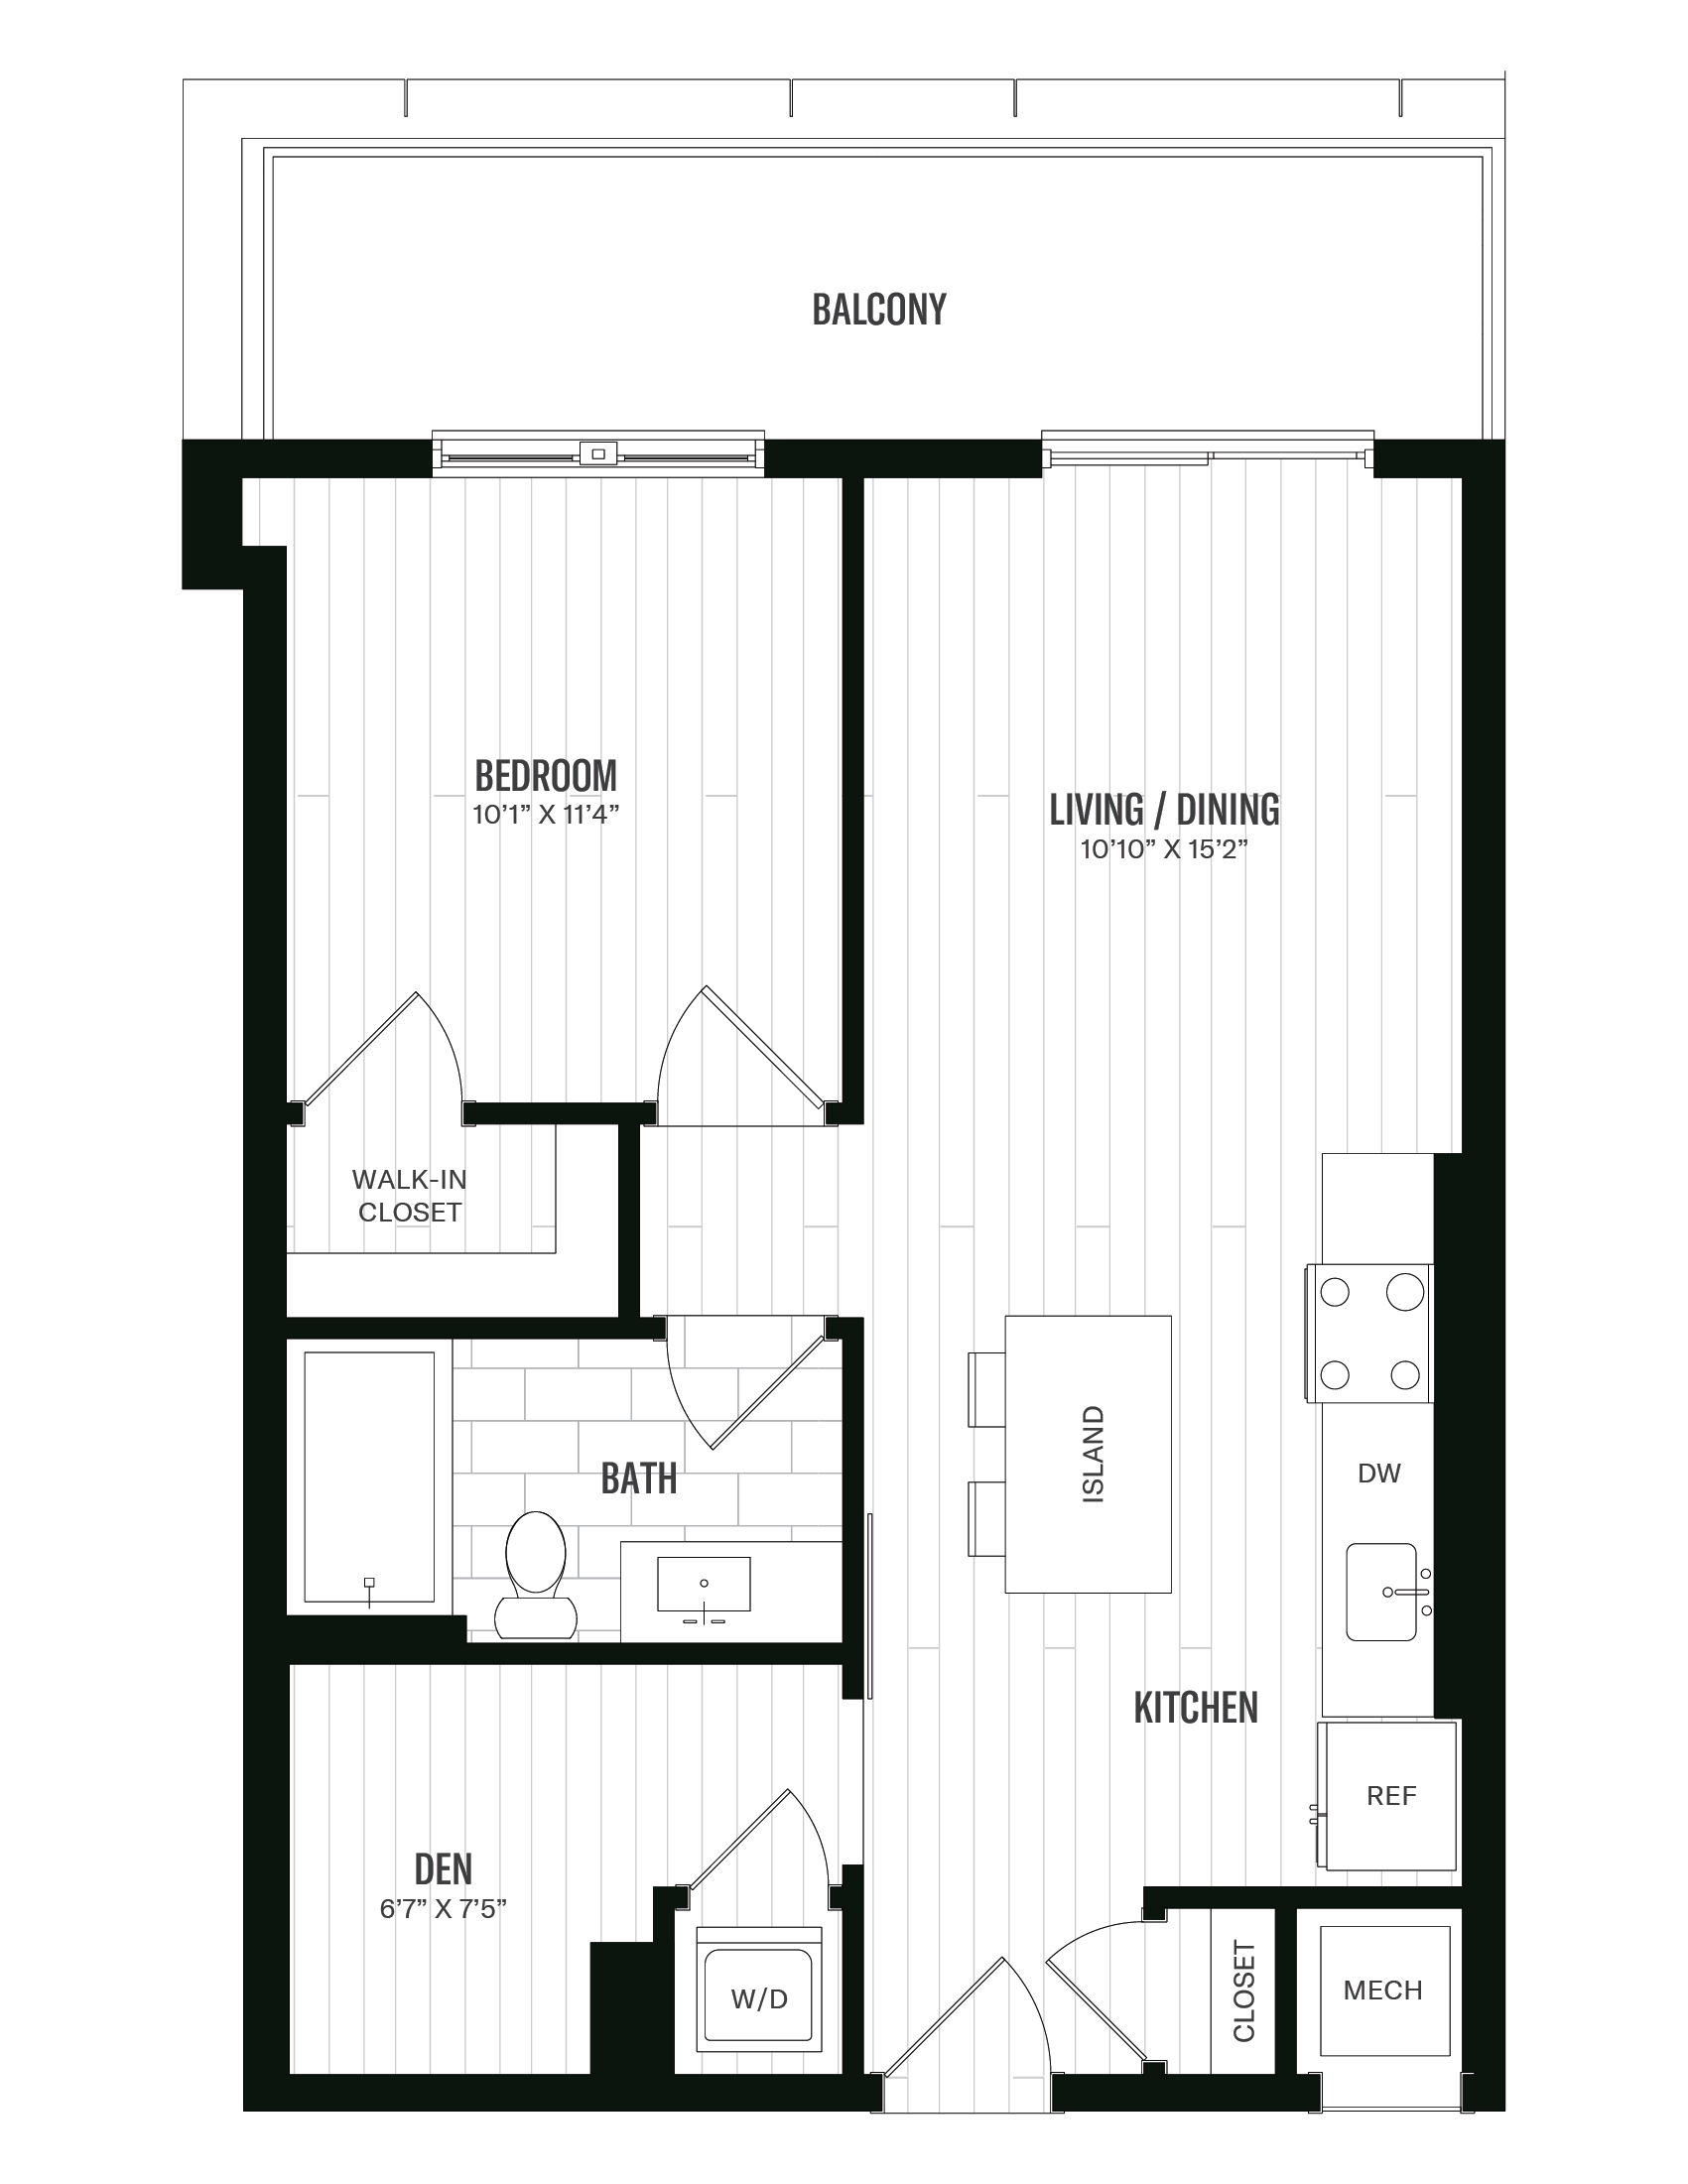 Floorplan image of unit 642